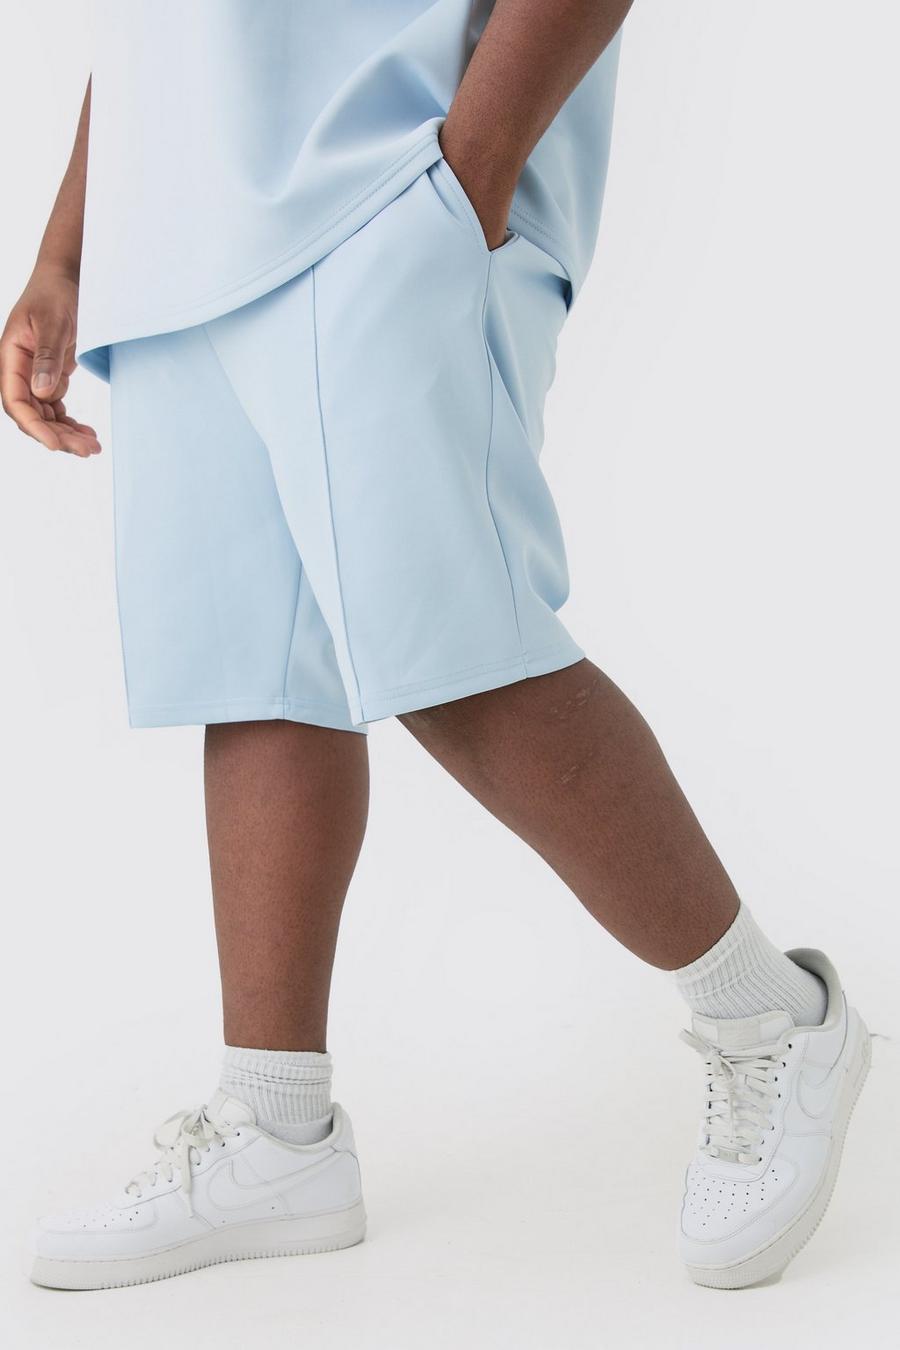 Pantaloncini Plus Size in Scuba Slim Fit, Pastel blue